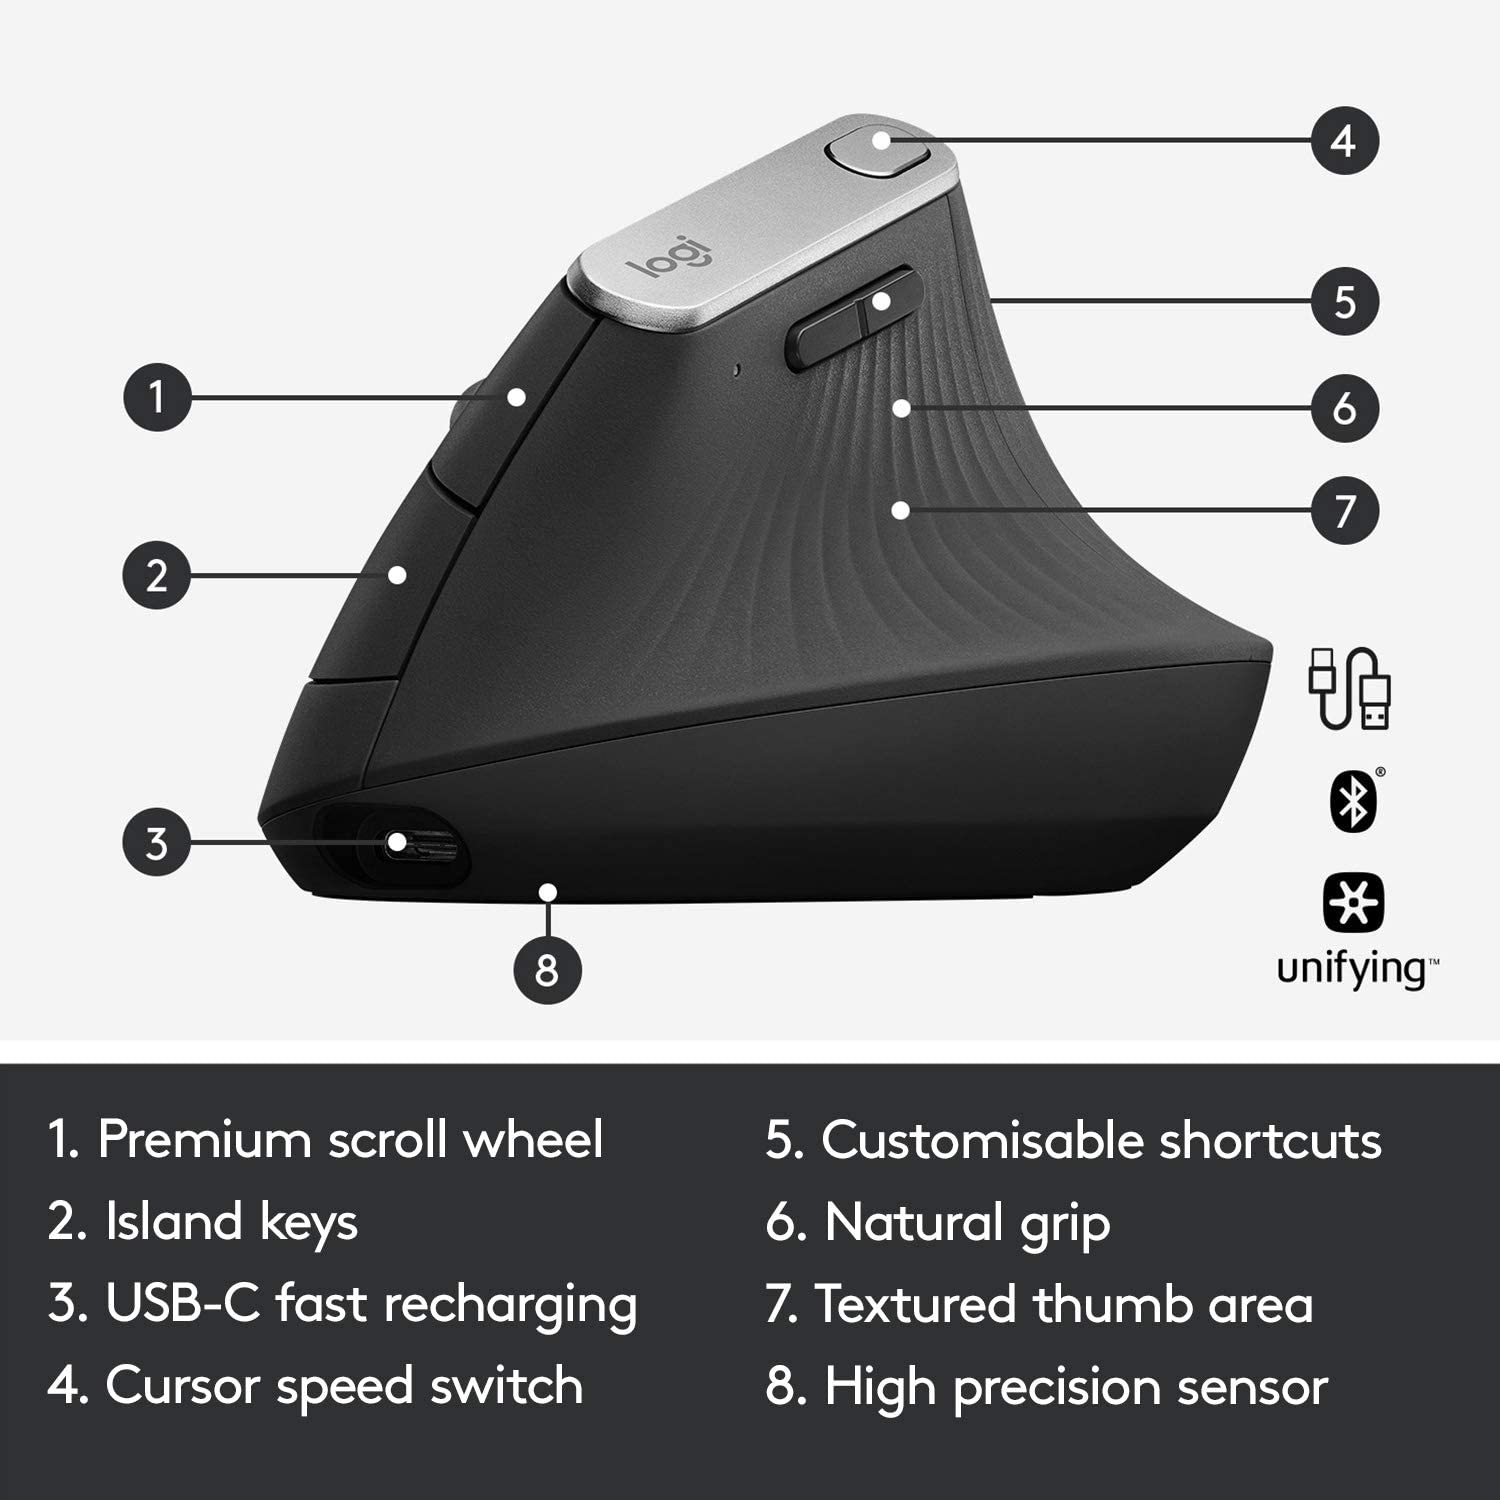 Souris verticale sans fil Logitech MX - Conception ergonomique avancée réduisant les tensions musculaires, contrôle et déplacement de contenu entre 3 ordinateurs Windows et Apple (Bluetooth ou USB), rechargeable, graphite